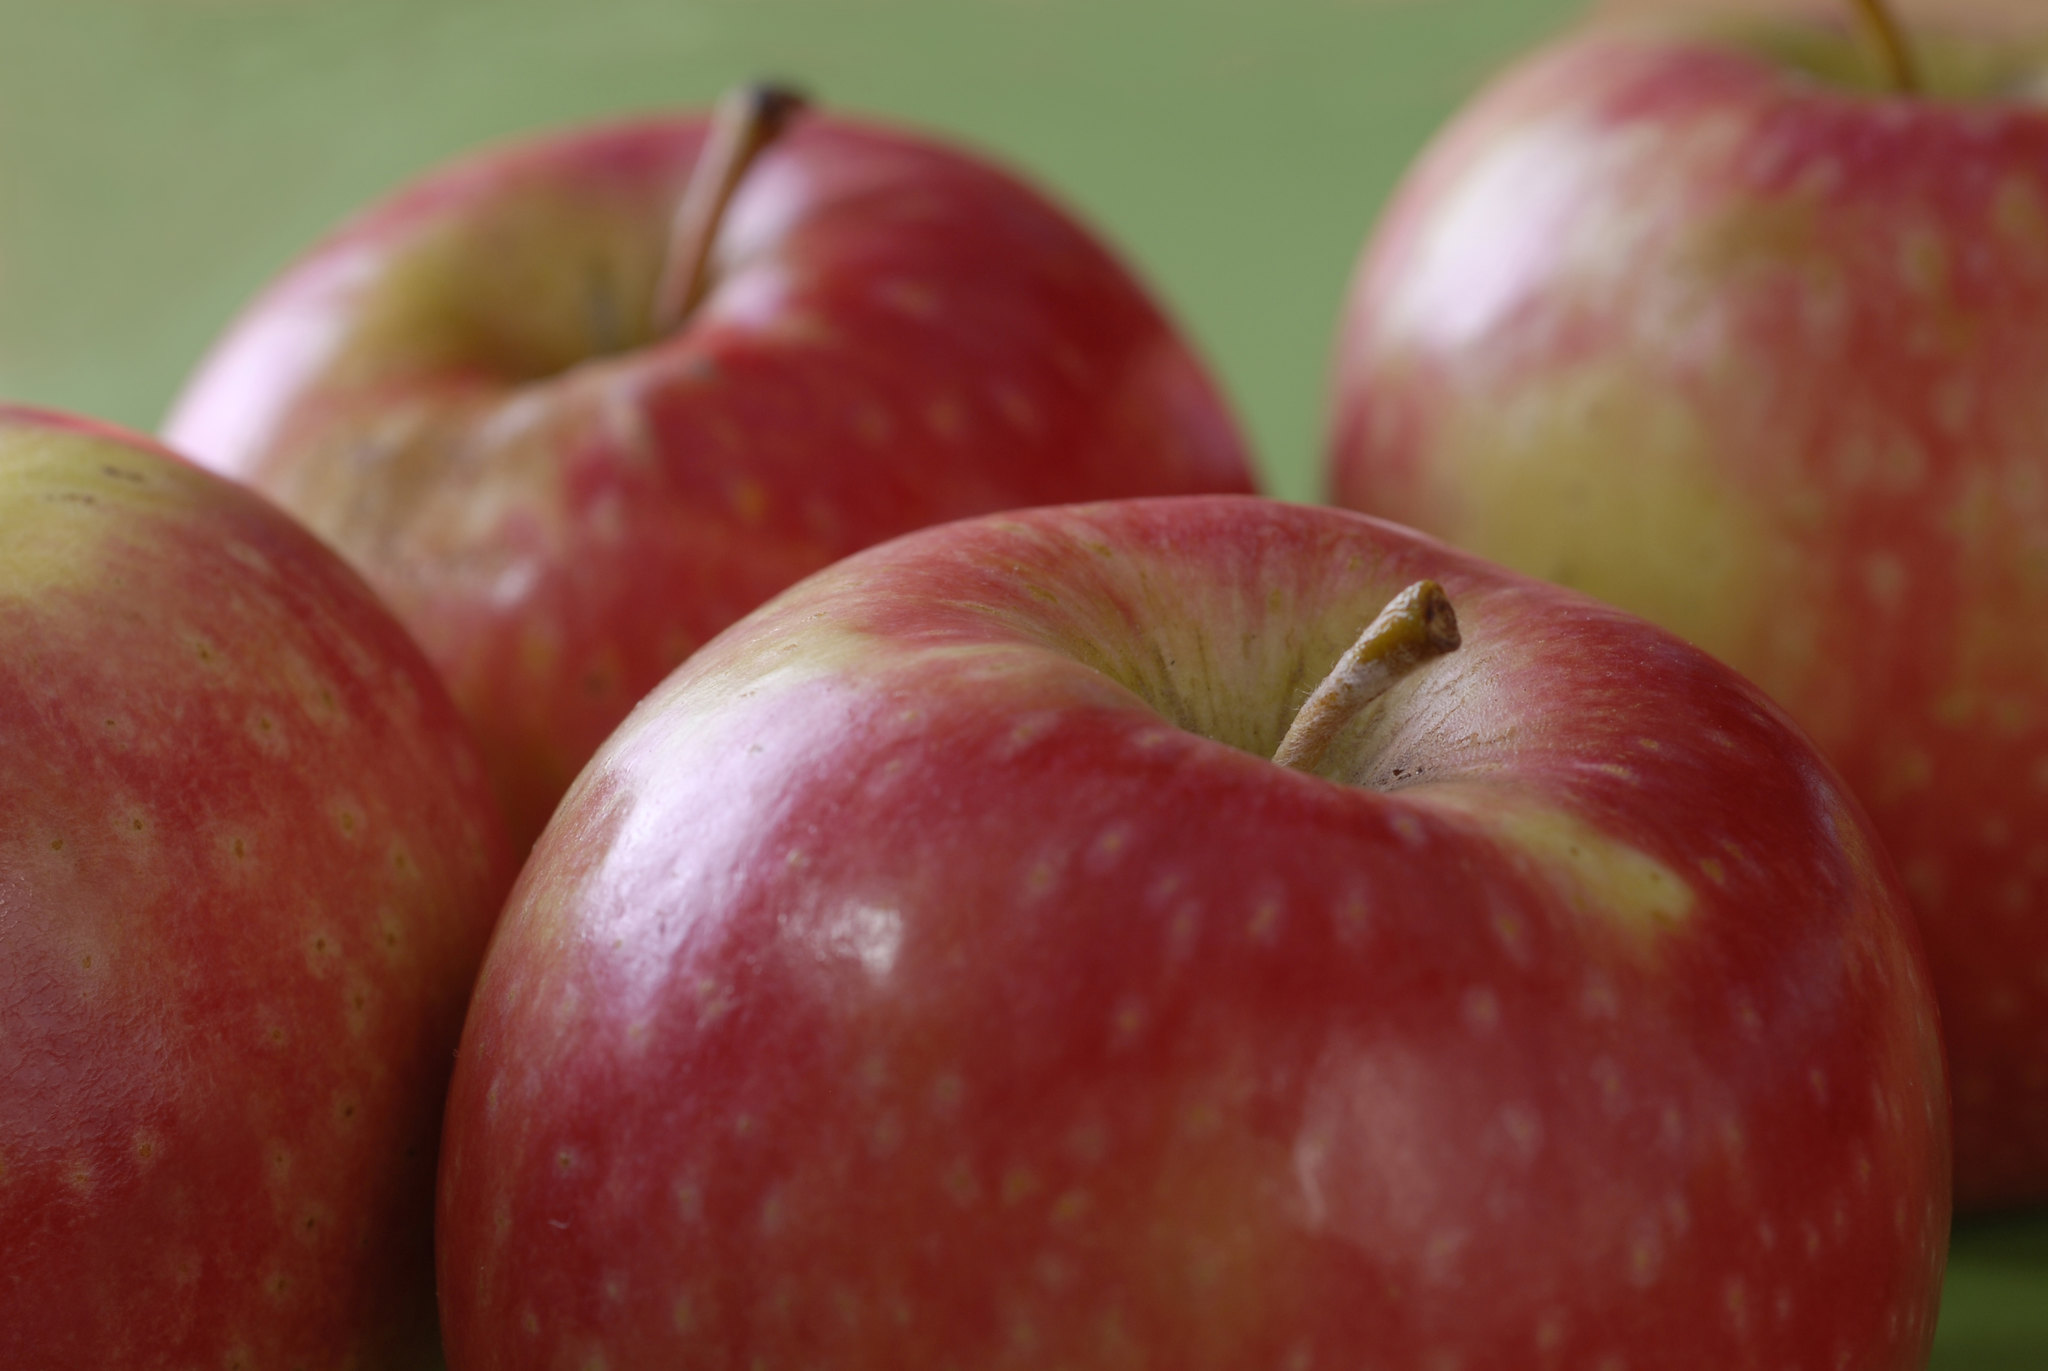 Une pomme contient des millions de bactéries, mais c’est pour notre bien ! © APAL, Flickr